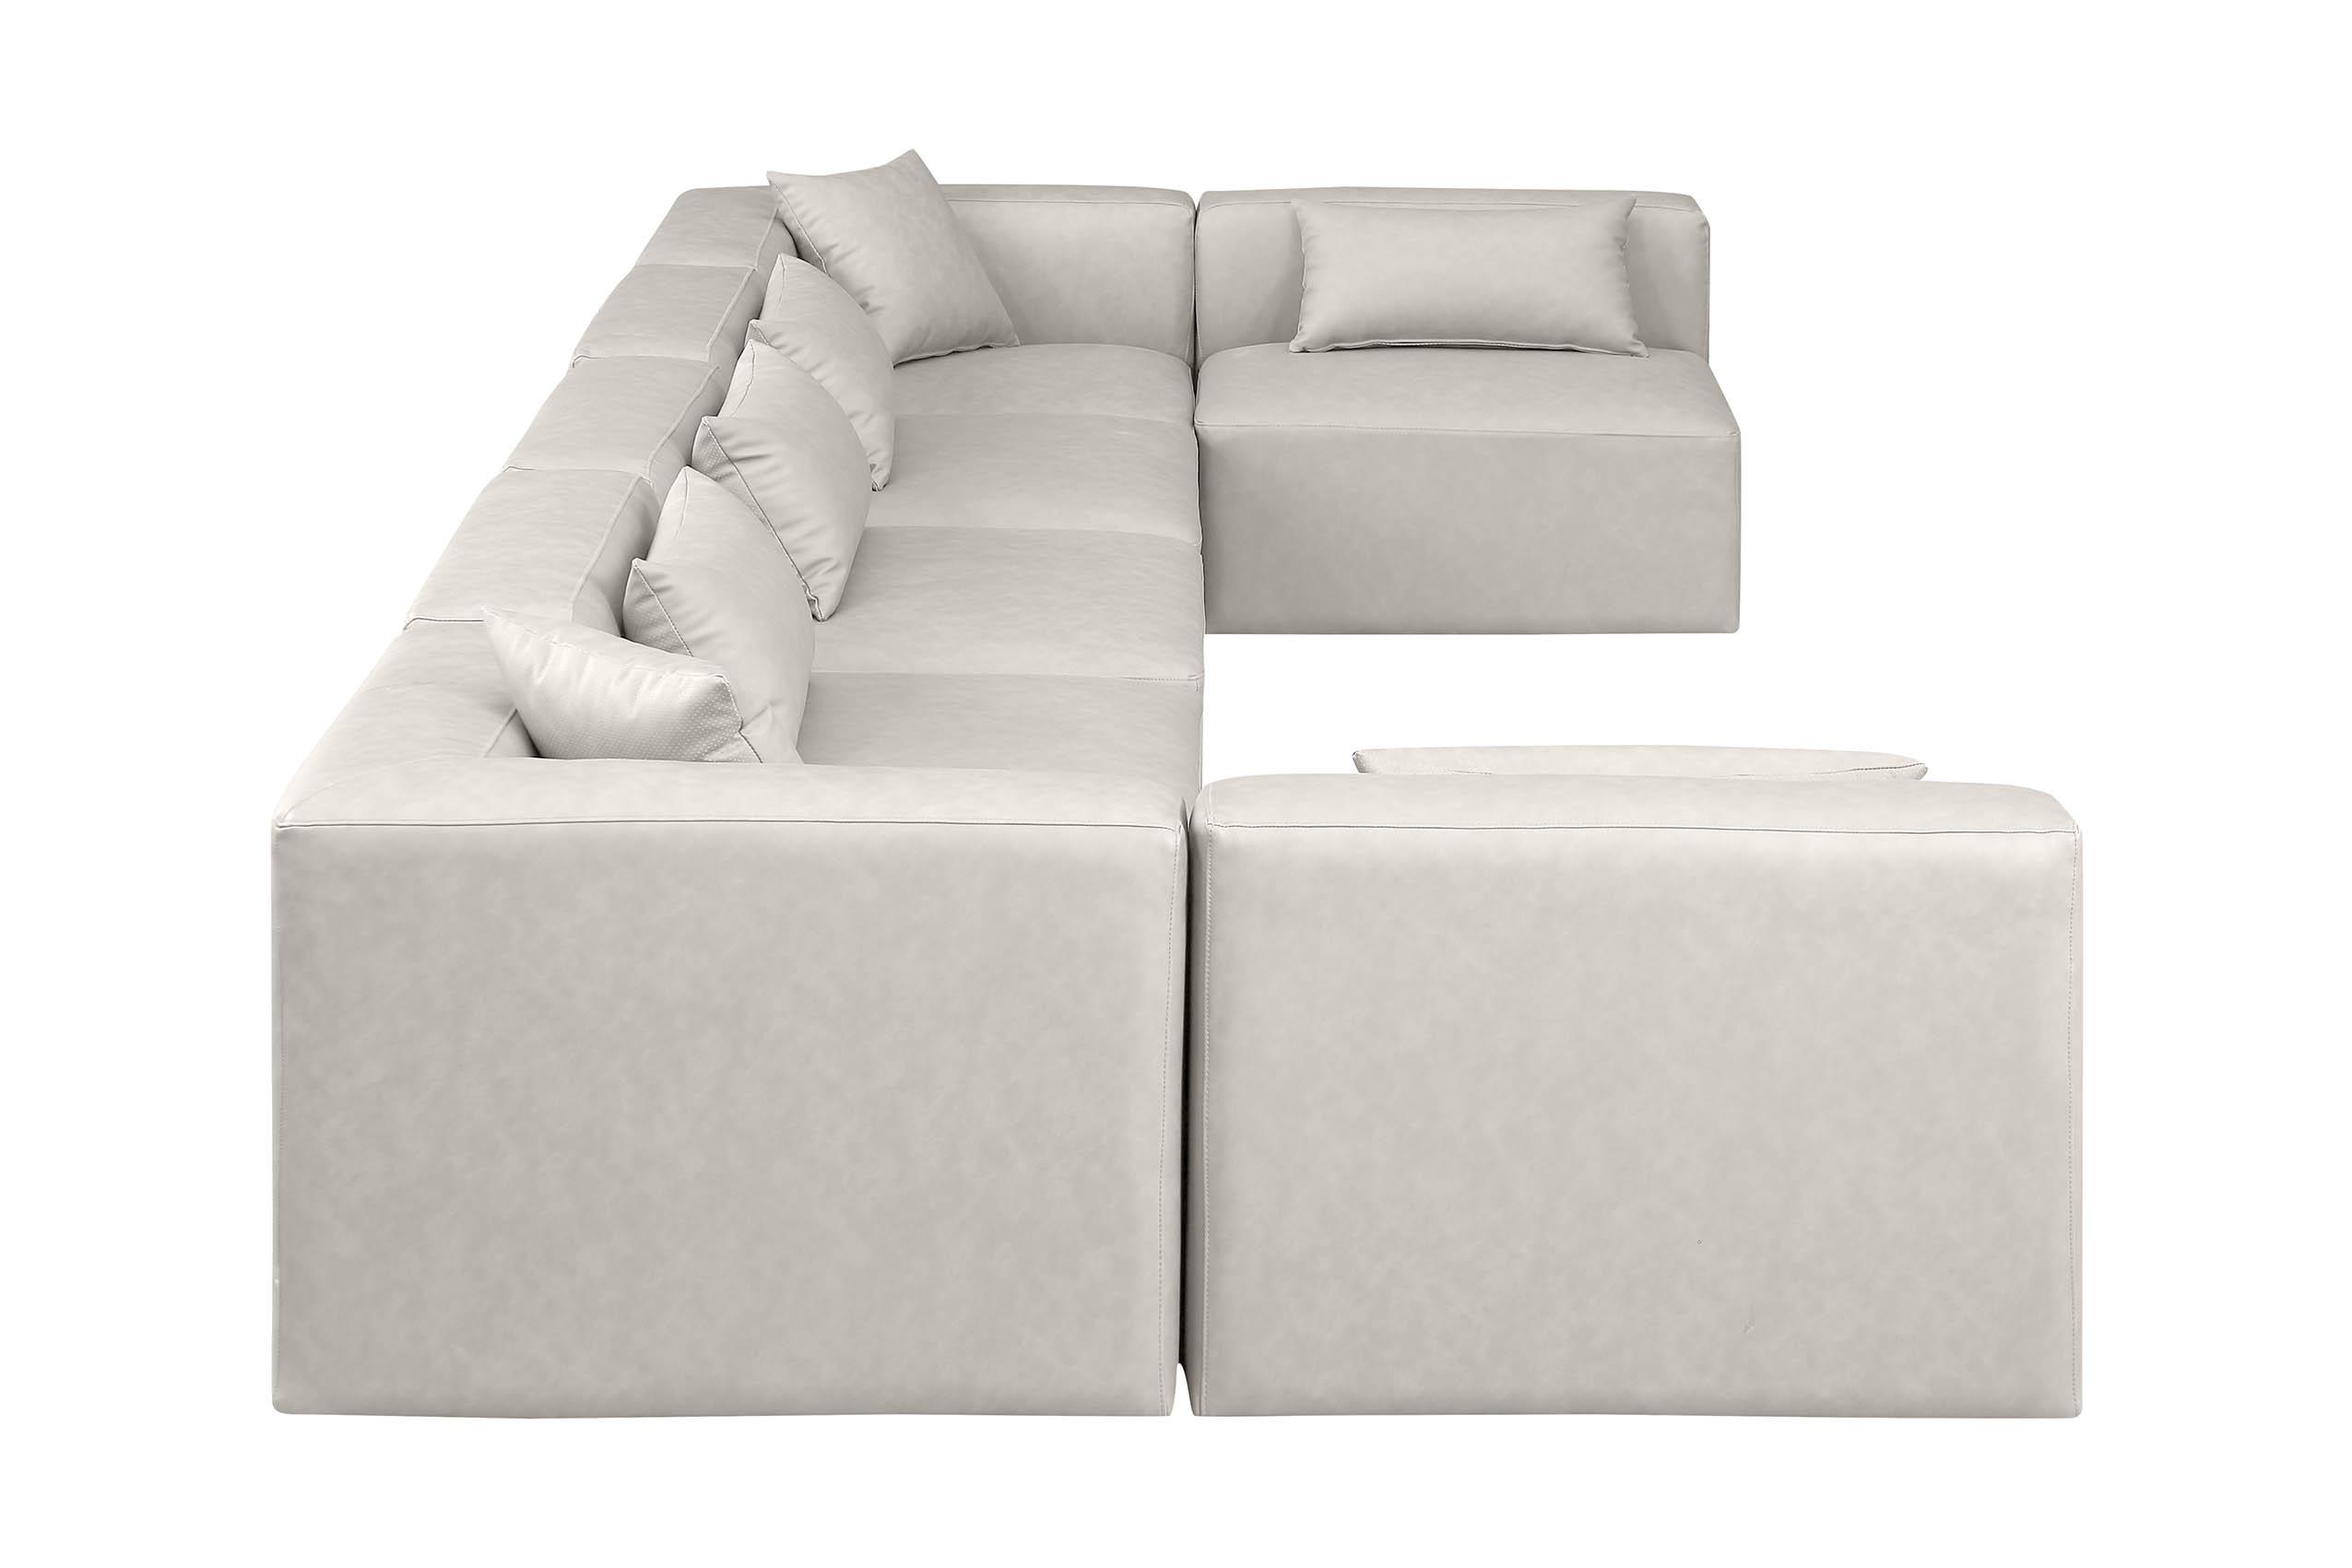 

    
Meridian Furniture CUBE 668Cream-Sec7B Modular Sectional Sofa Cream 668Cream-Sec7B
